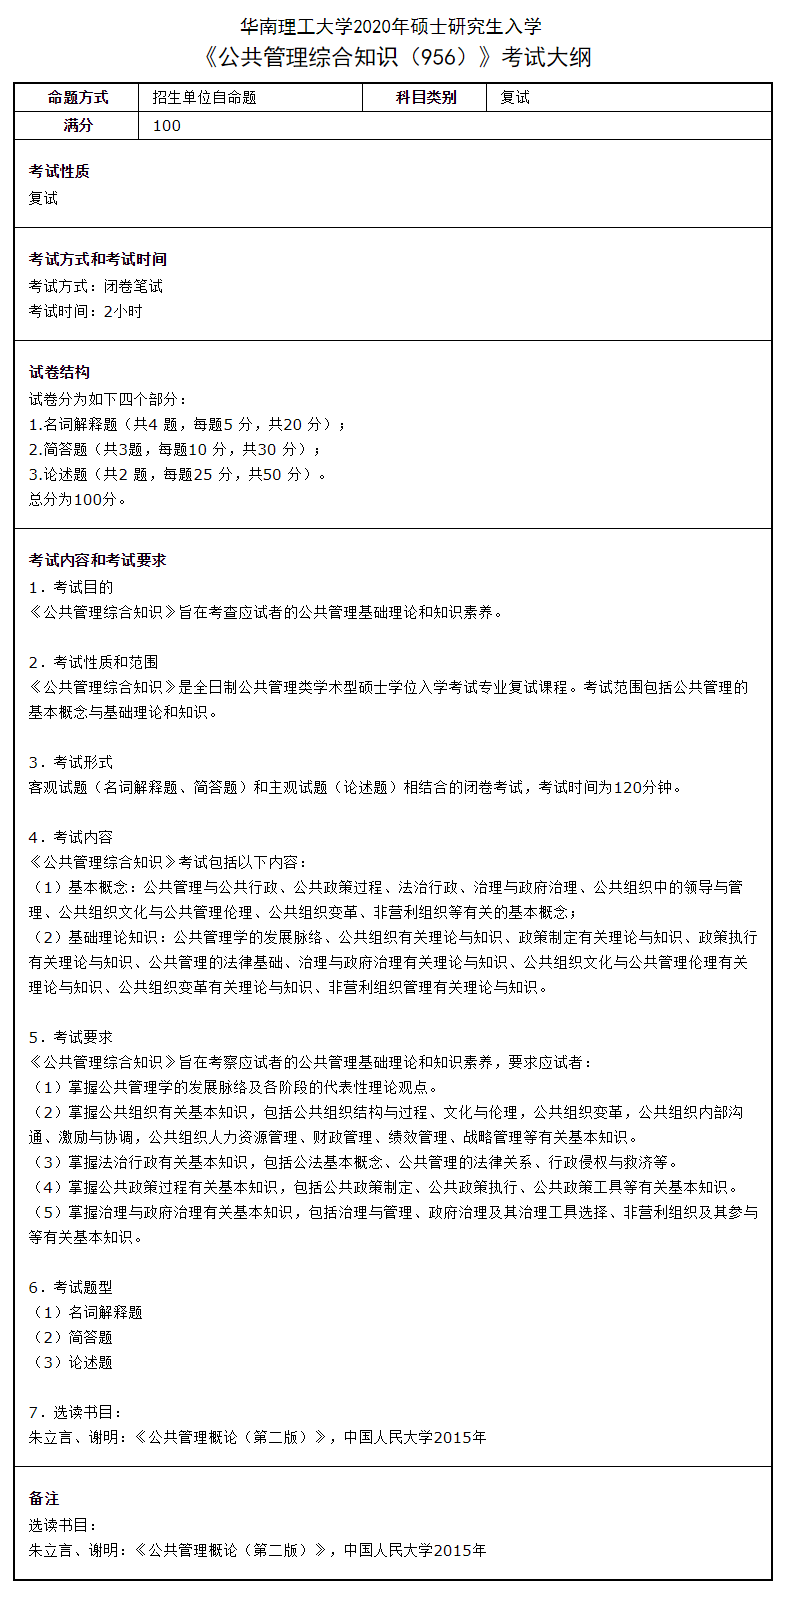 华南理工大学公共管理综合知识2020考研复试大纲